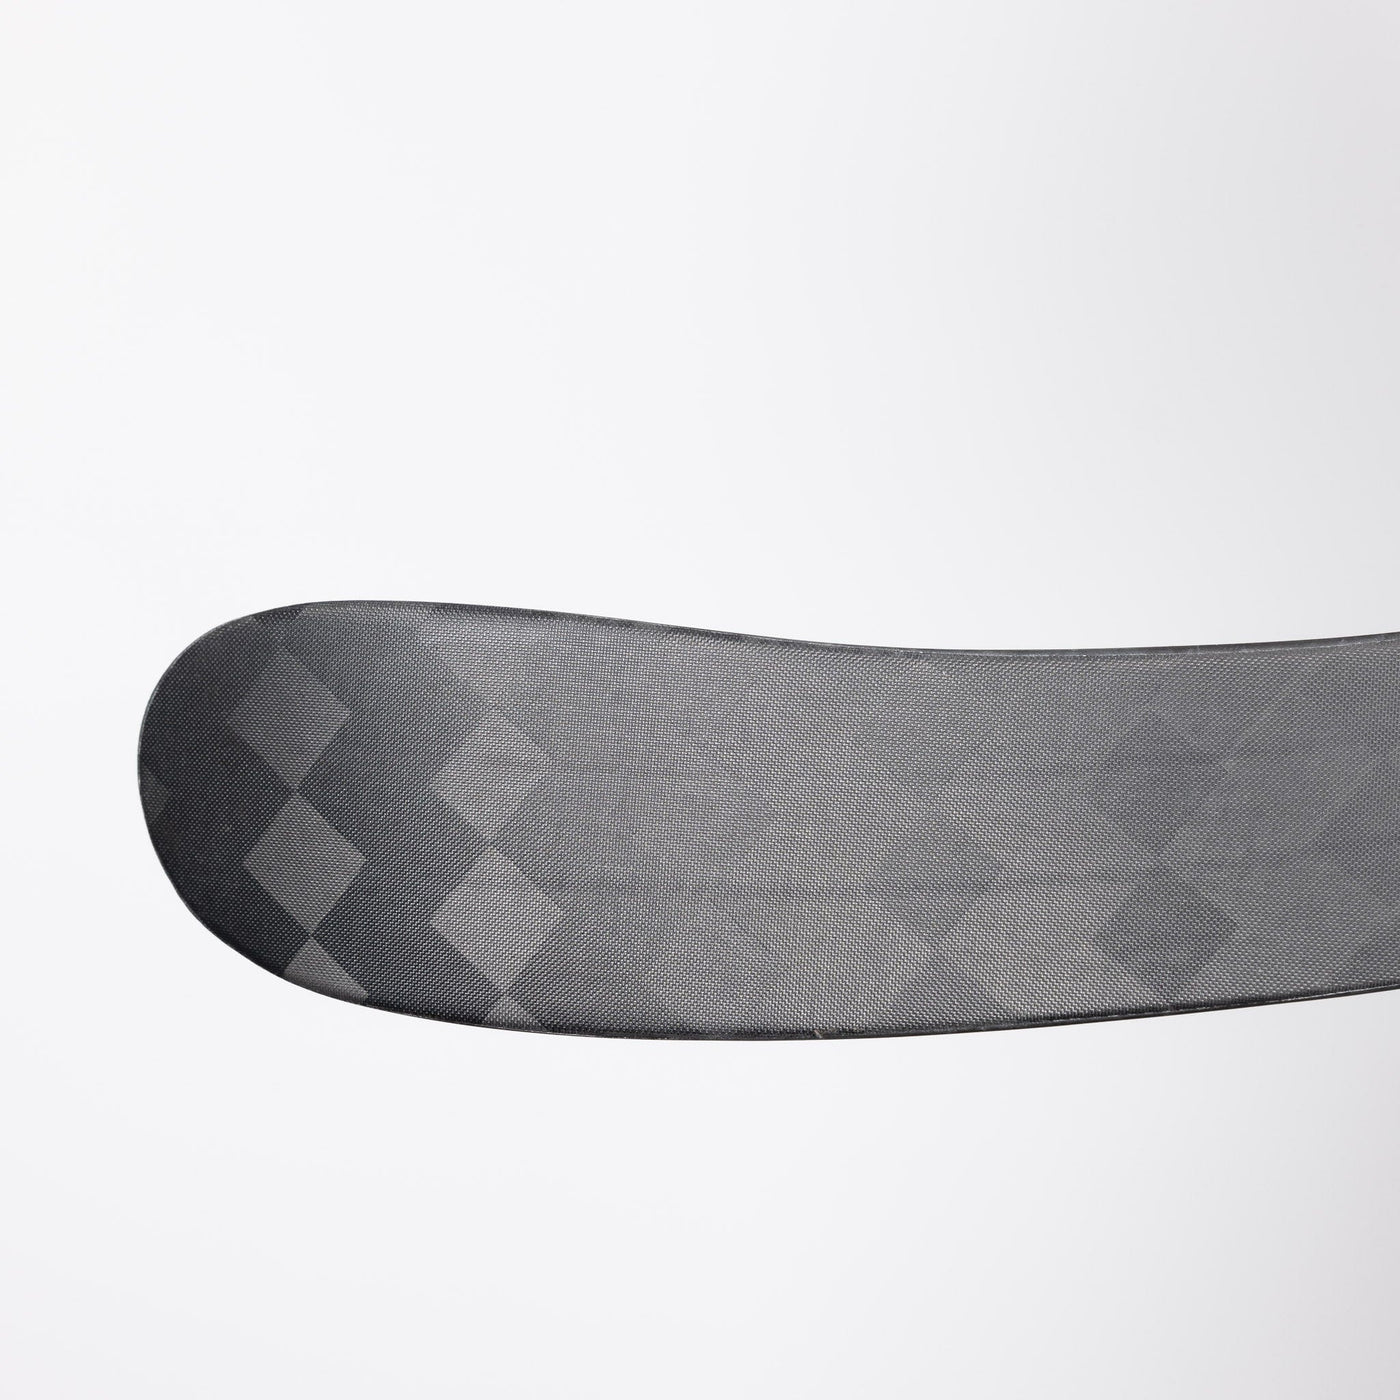 CCM RIBCOR Trigger 8 Pro Junior Hockey Stick - Chrome - TheHockeyShop.com